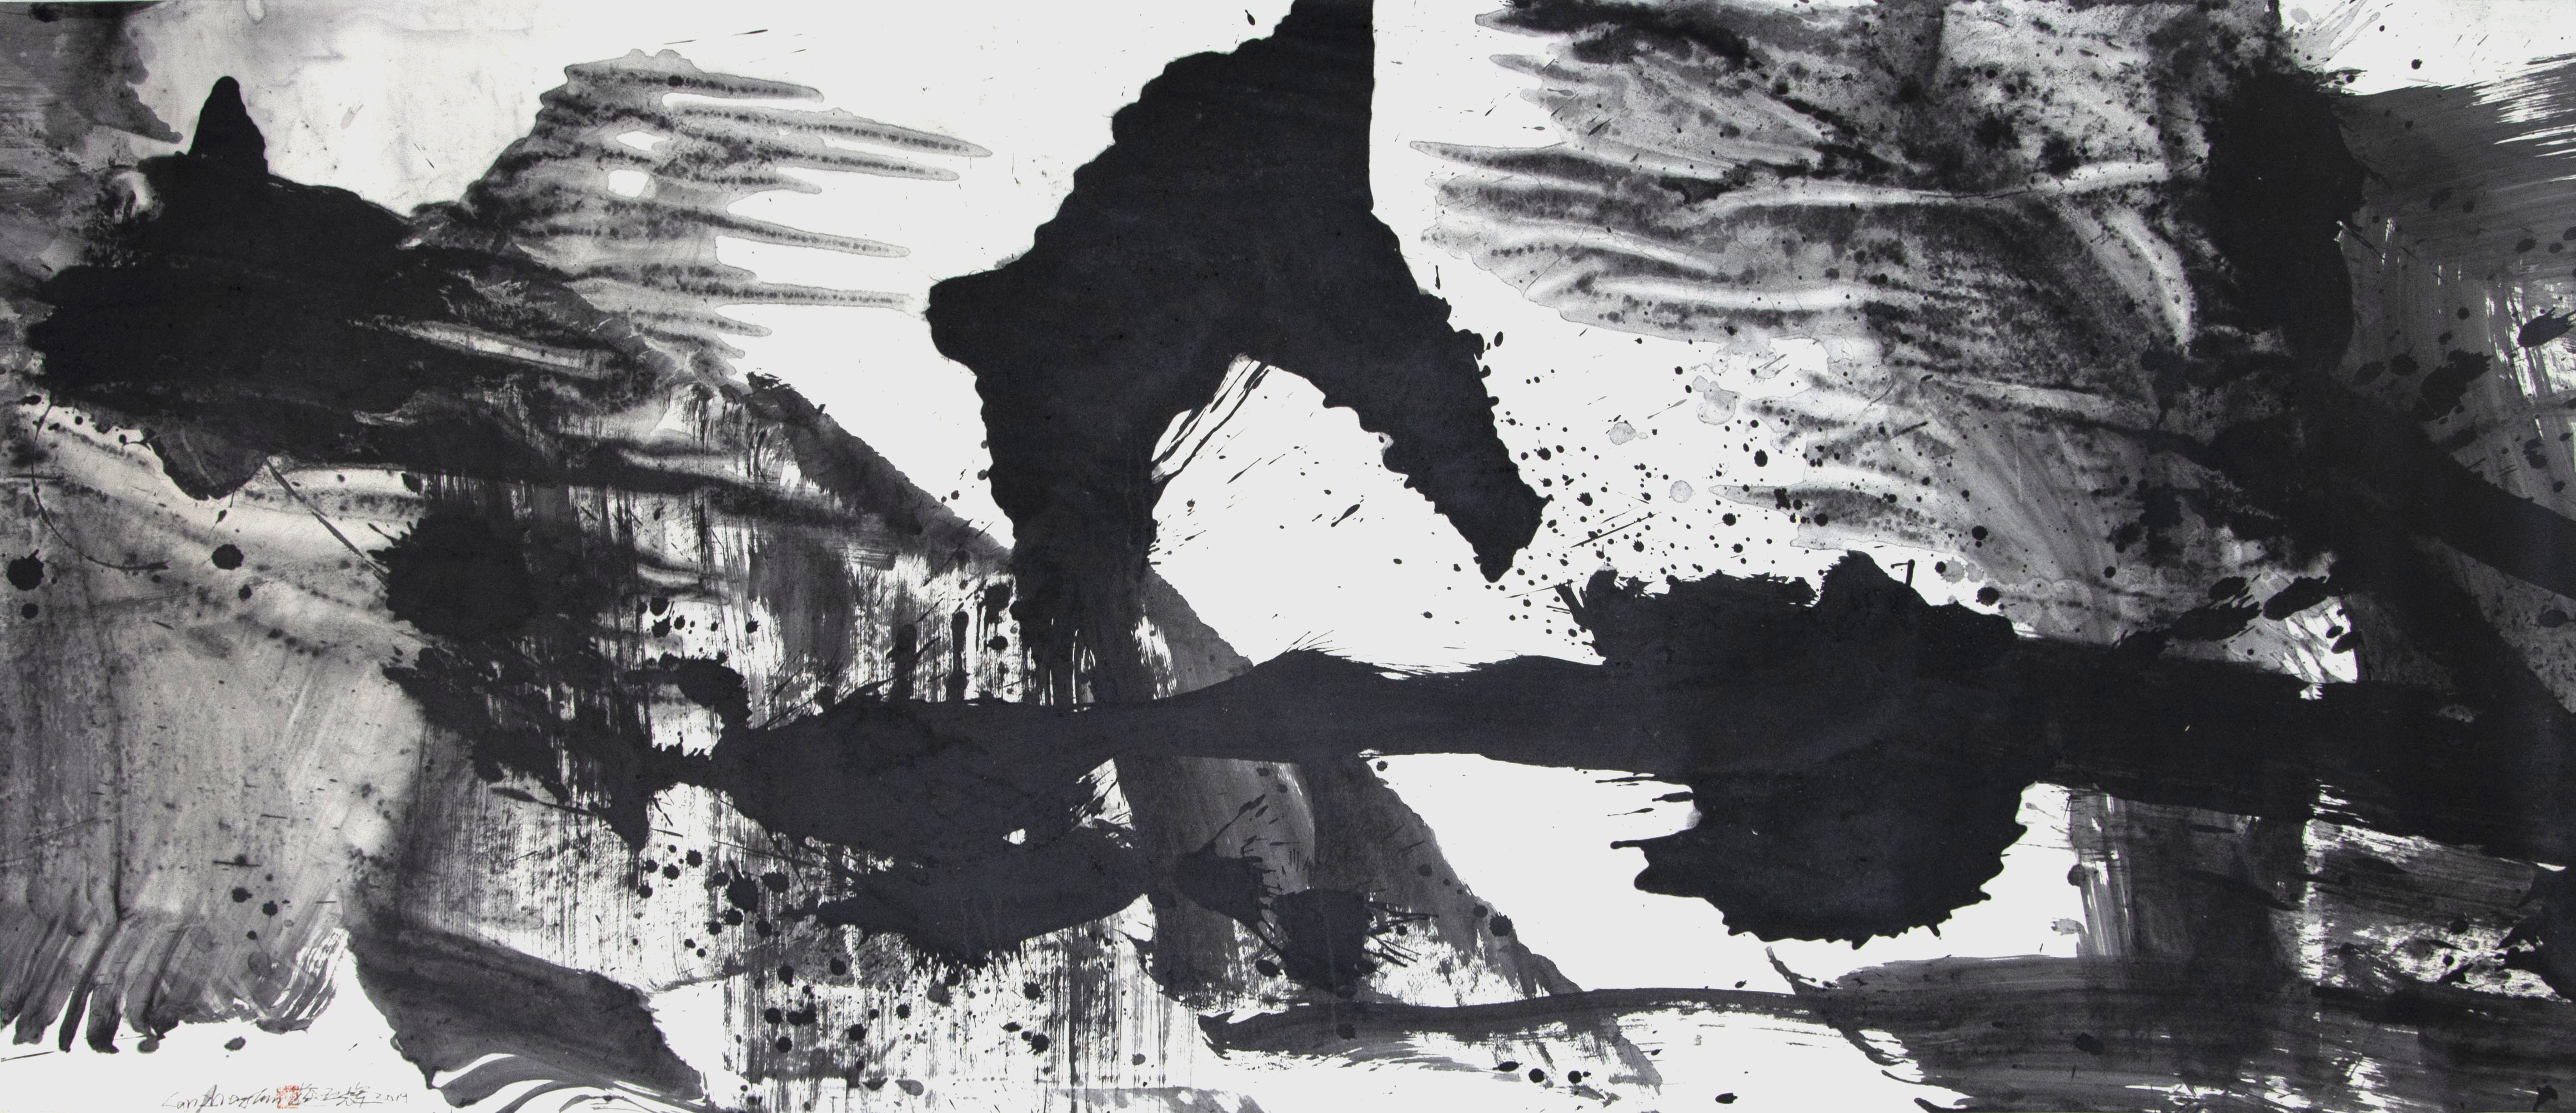 Ethan Cohen Gallery, Lan Zhenghui, Ink on Paper, 2019